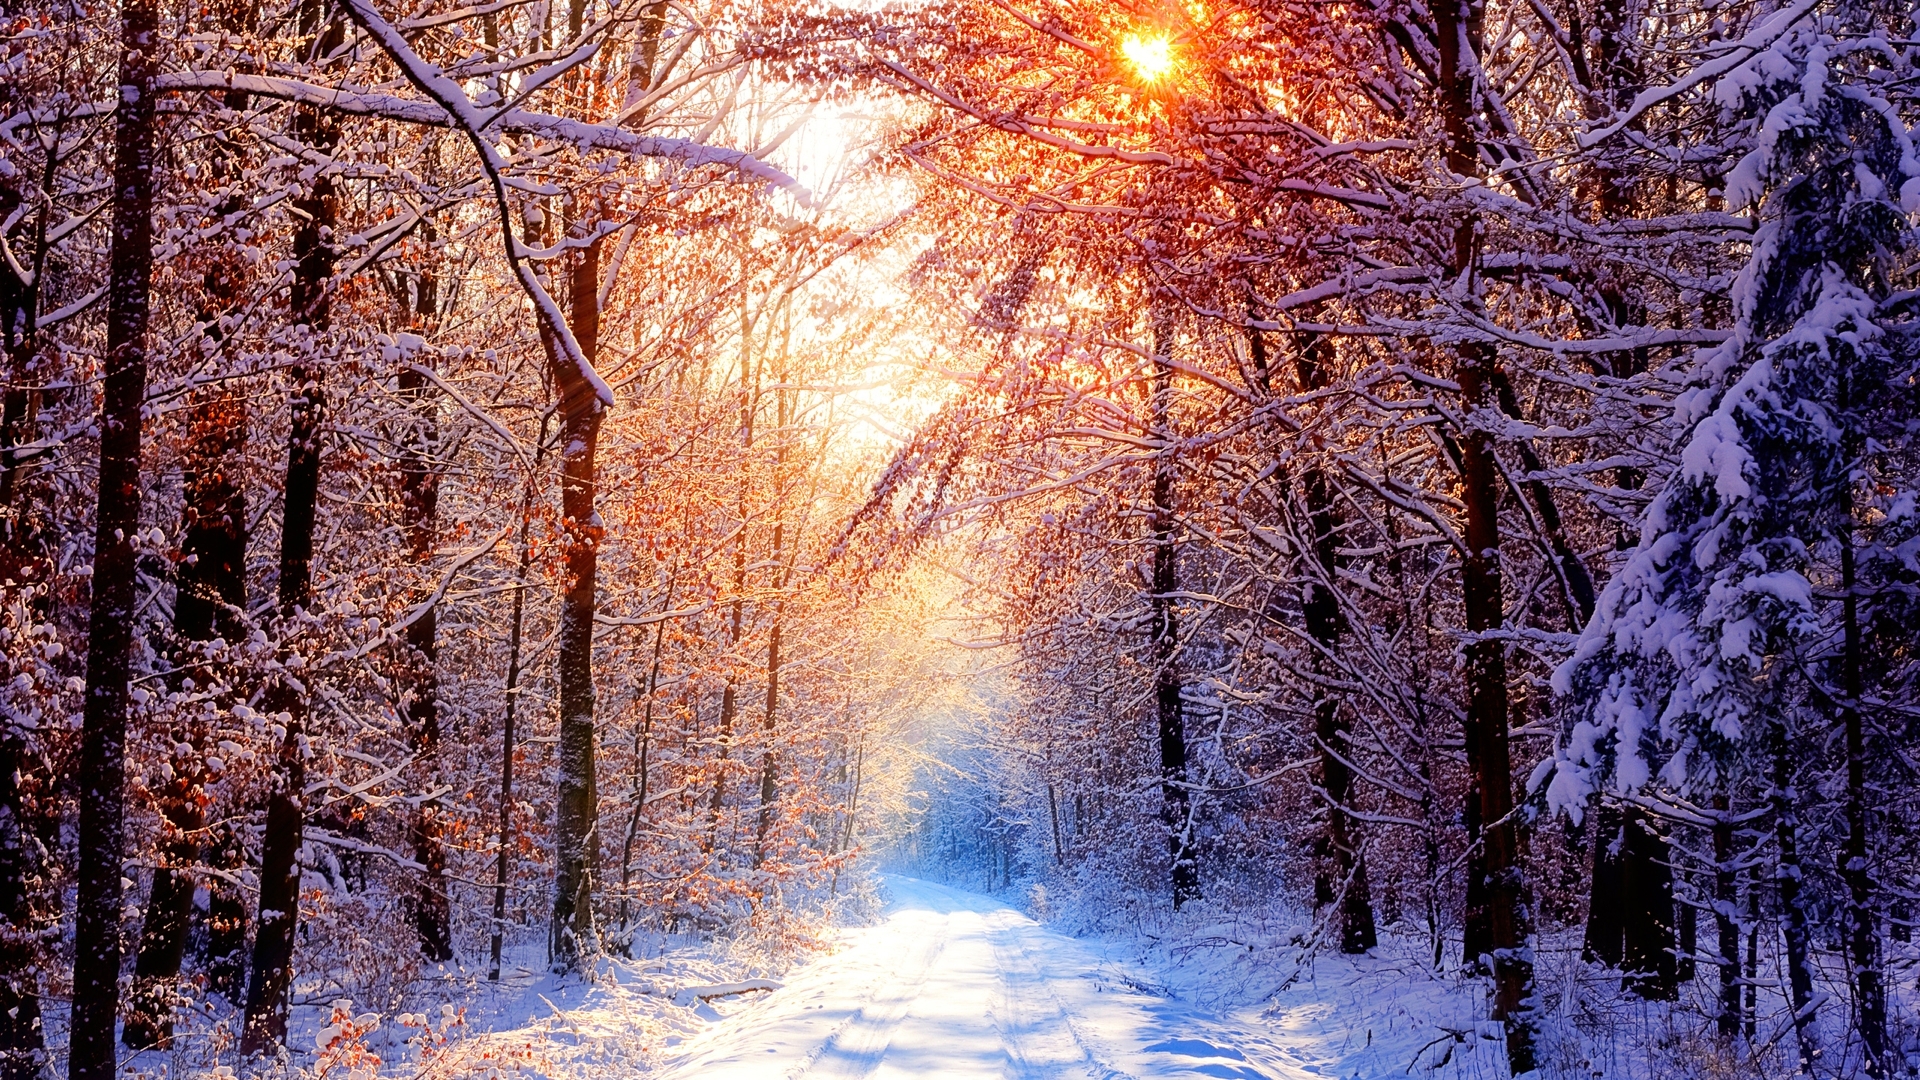 Mùa đông là thời điểm tuyệt vời để trải nghiệm những cảm giác mới lạ, đầy ấn tượng. Hãy đắm mình trong những hình ảnh đầy màu sắc và tuyệt đẹp của mùa đông để tận hưởng niềm vui này.